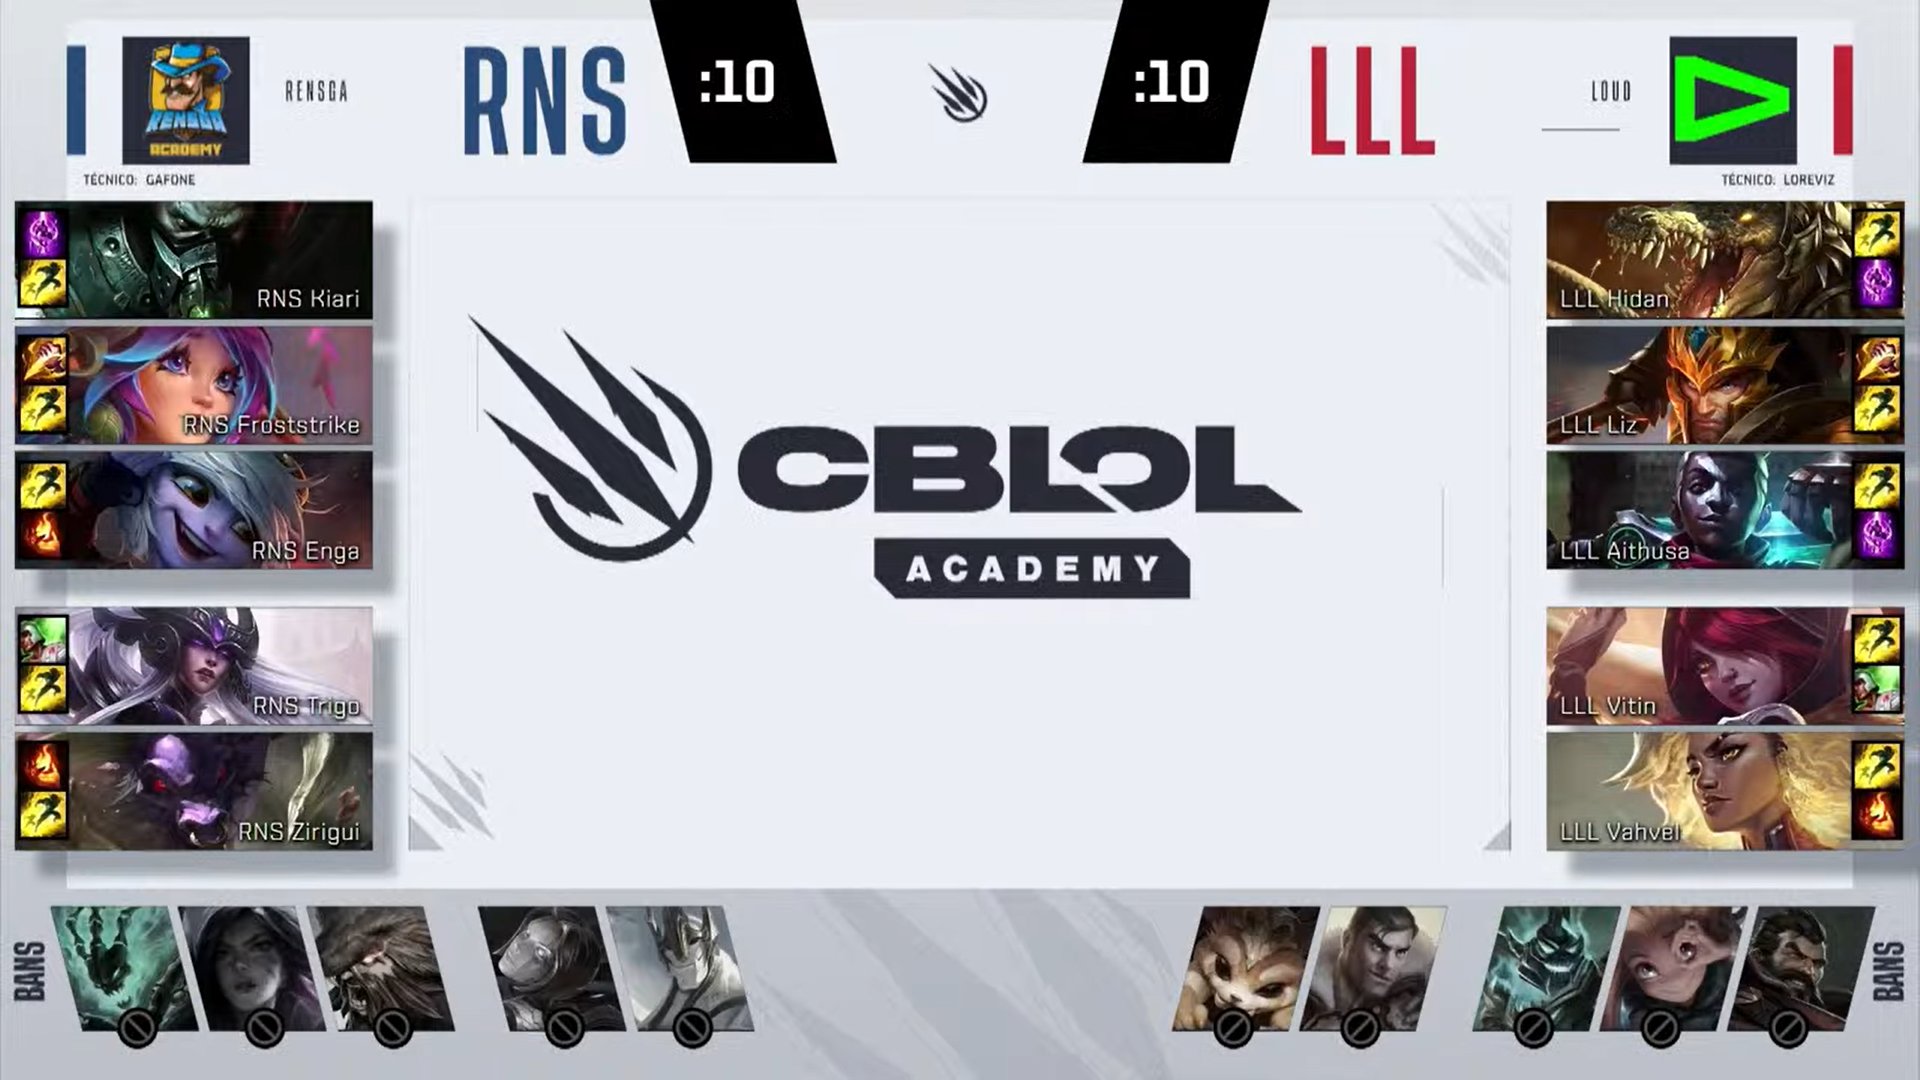 CBLOL Academy – Vorax engata sequência de três vitórias!